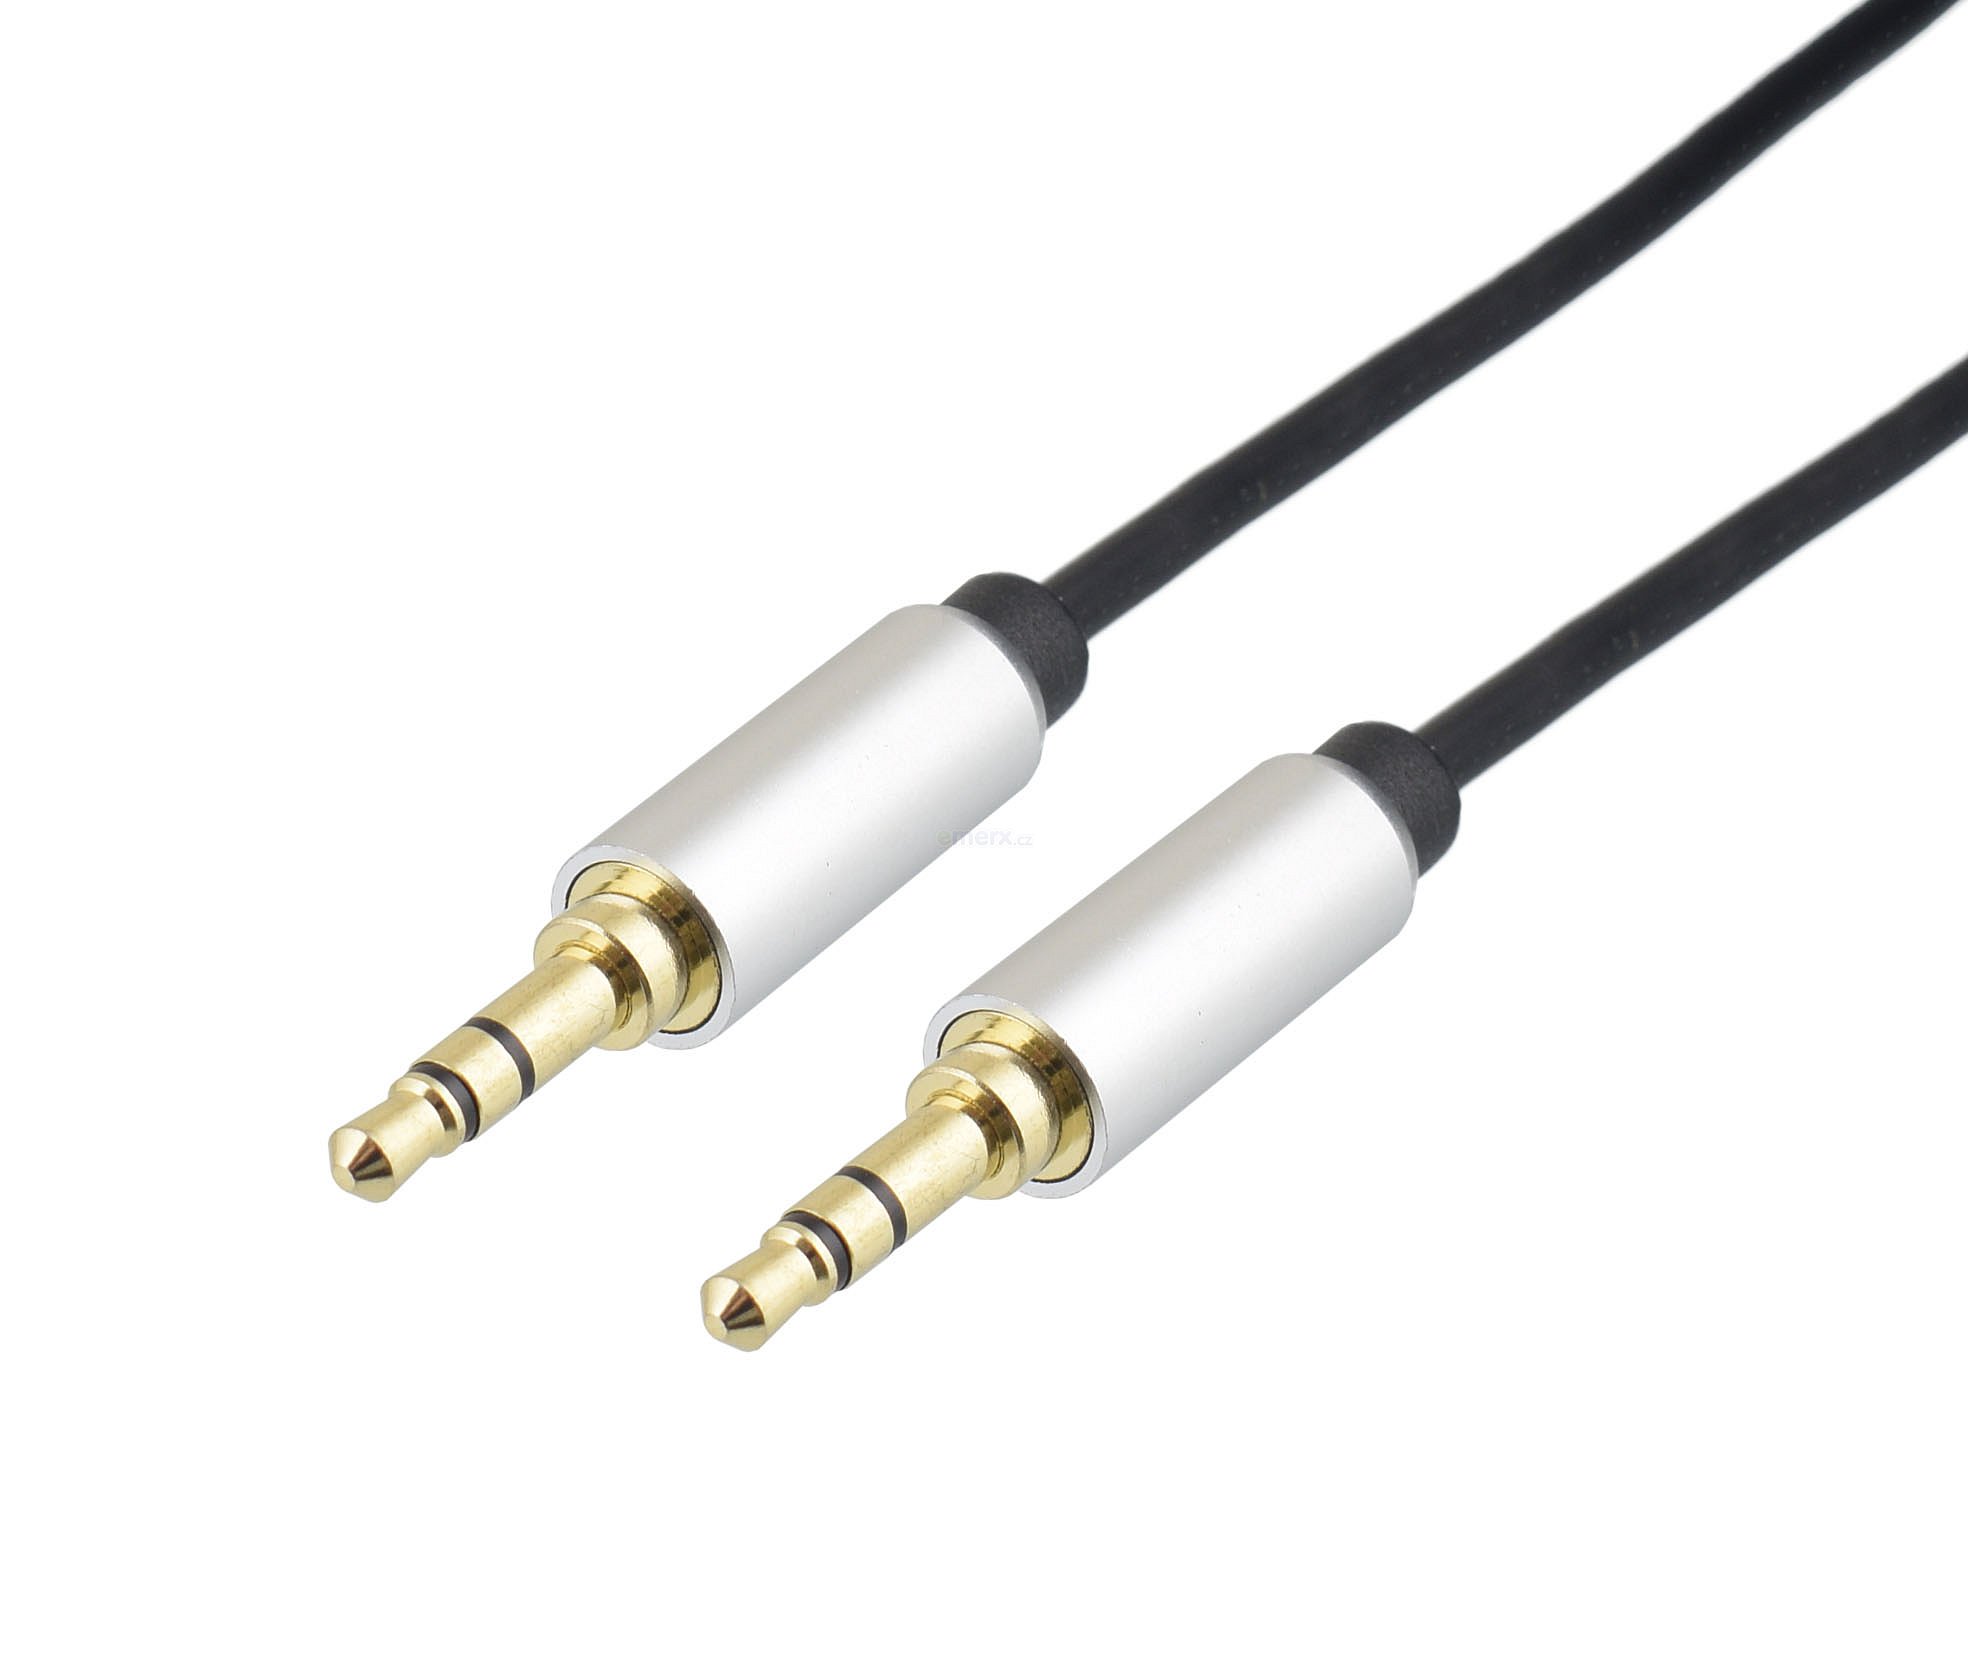 Propojovací audio kabel JACK 3,5mm STEREO vidlice na JACK 3,5mm STEREO vidlice, 1m, zlacený. (HS-702-1)